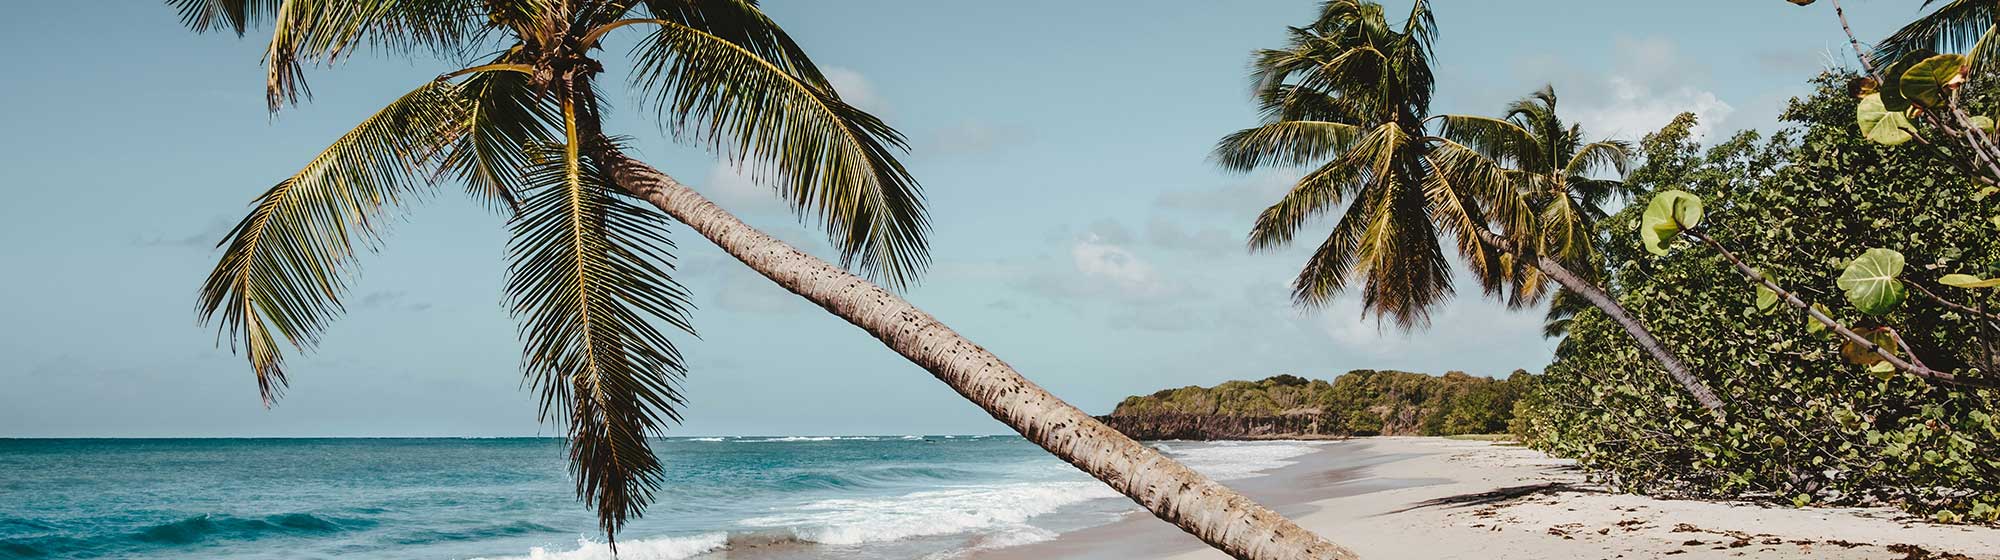 Un palmier dans le sable blanc et face à l'eau turquoise de la mer